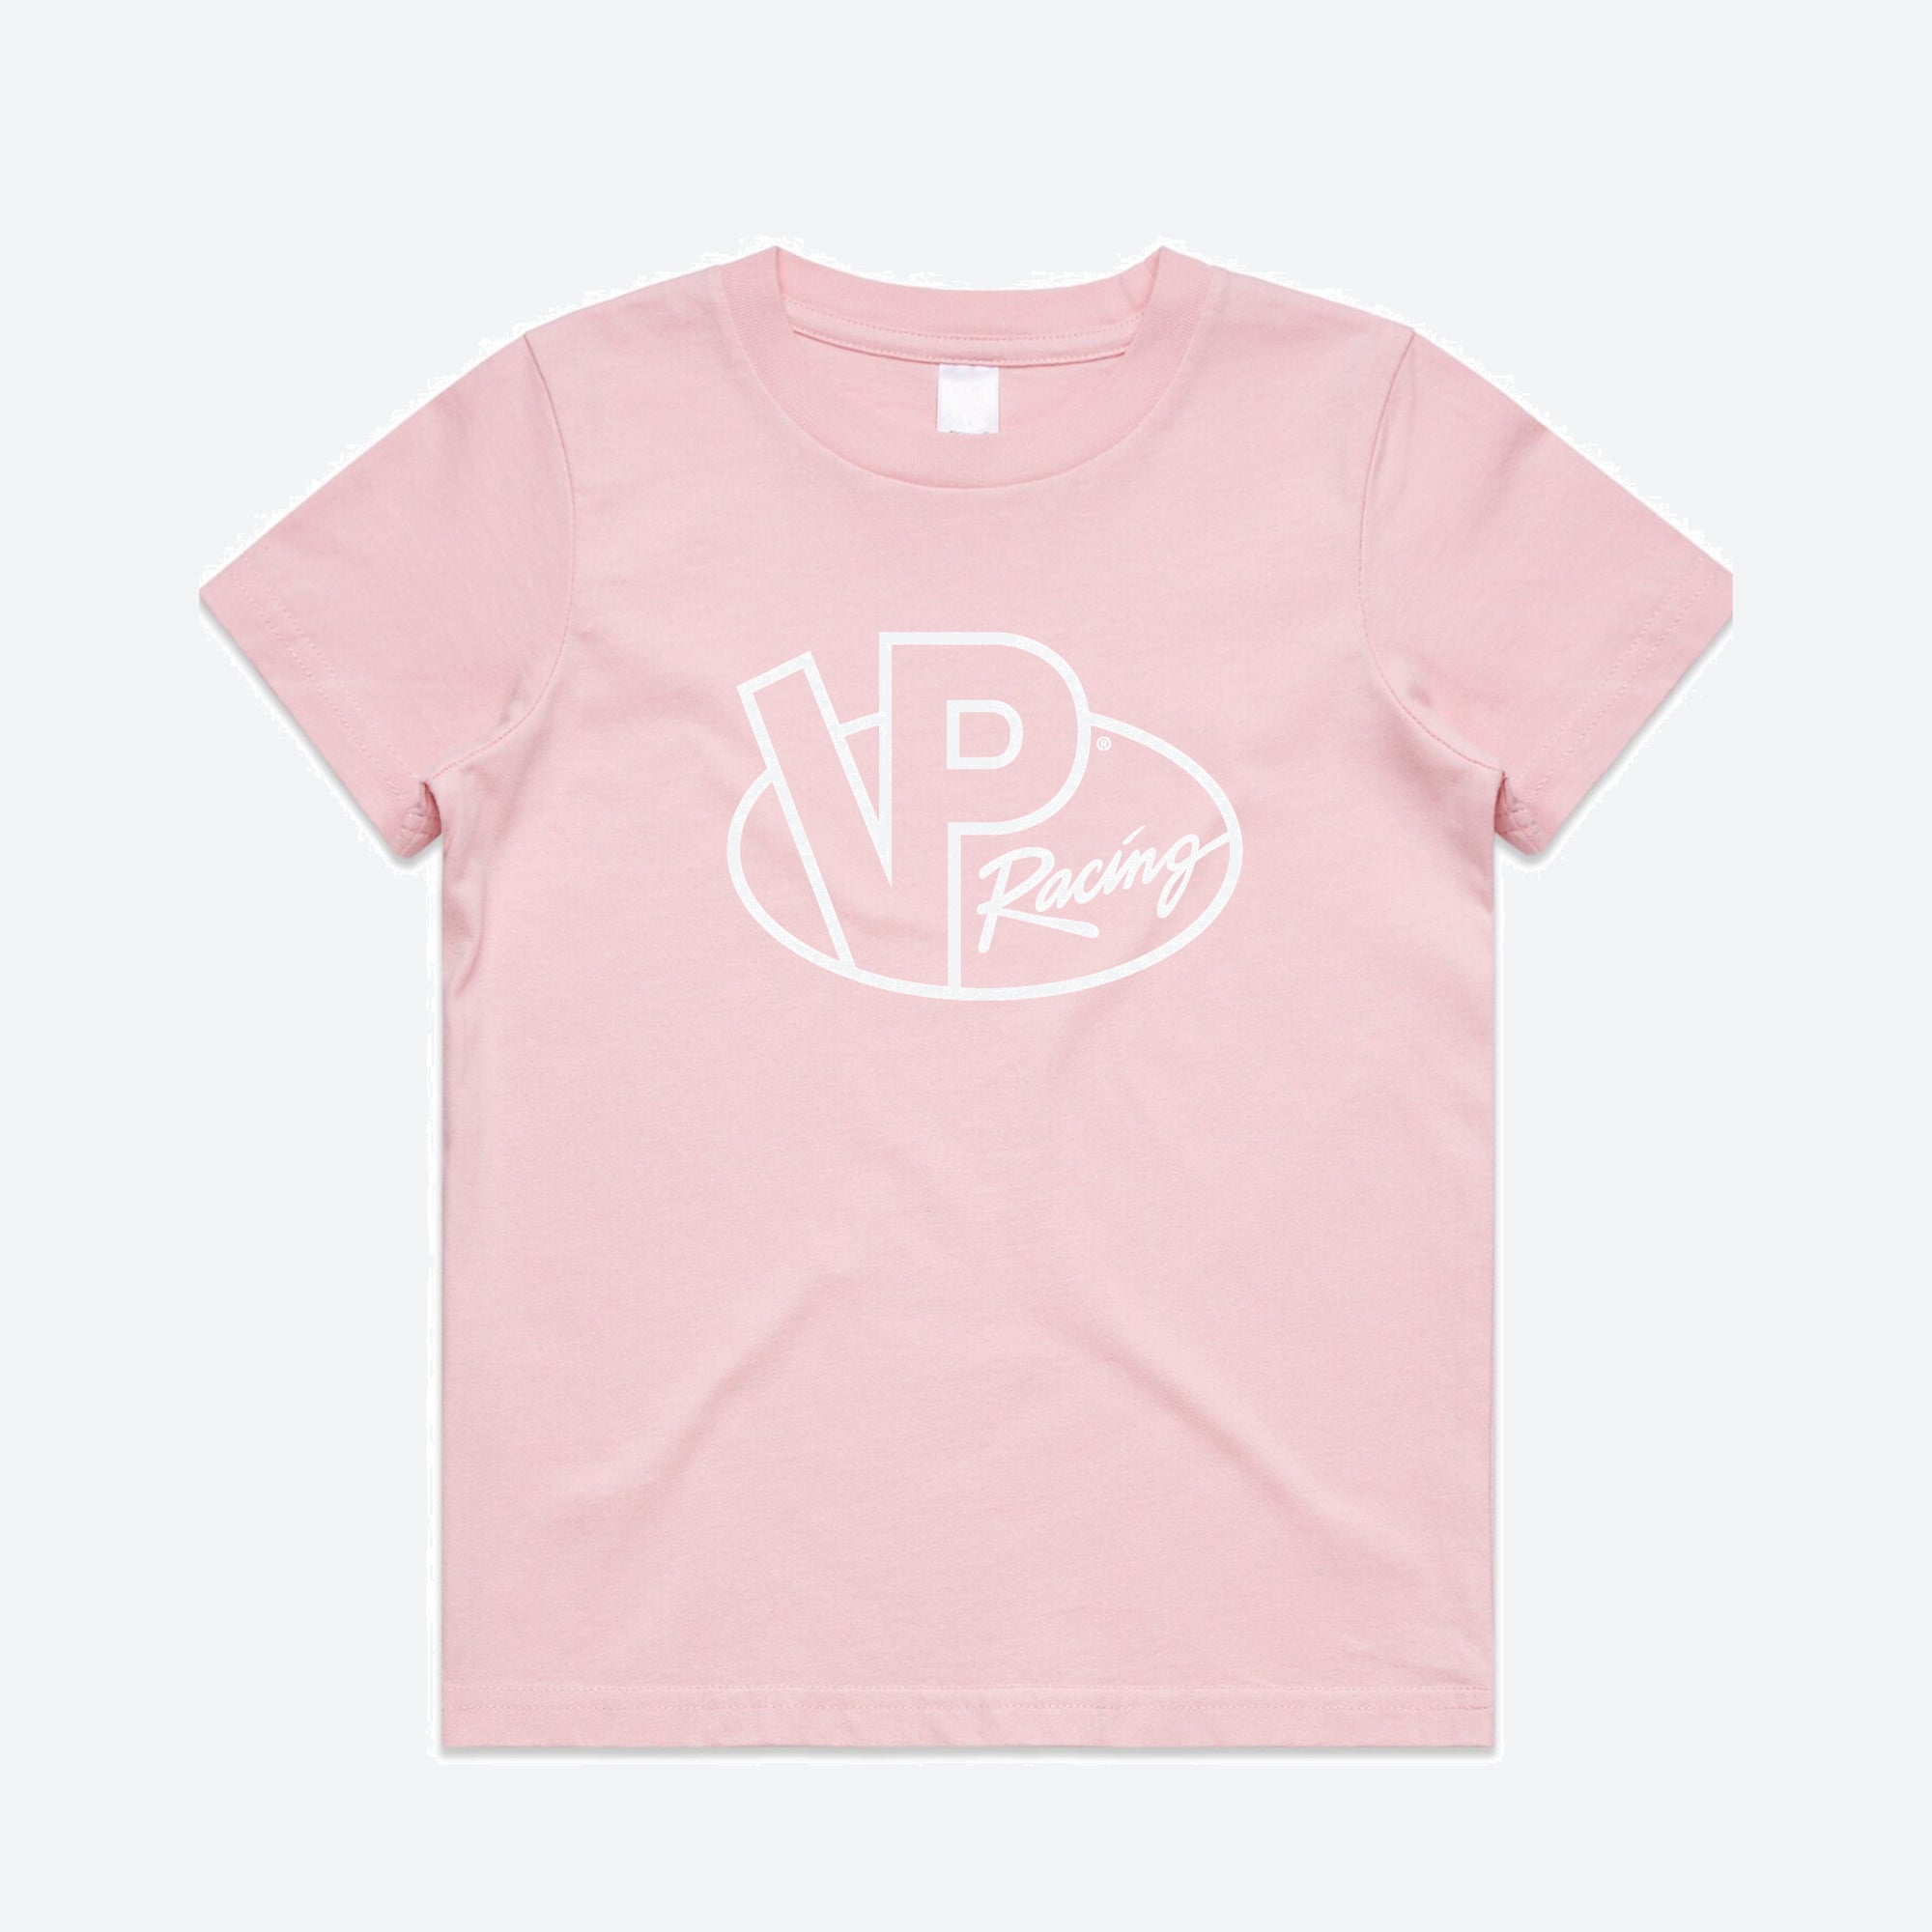 VP Racing - Little Miss VP T-Shirt